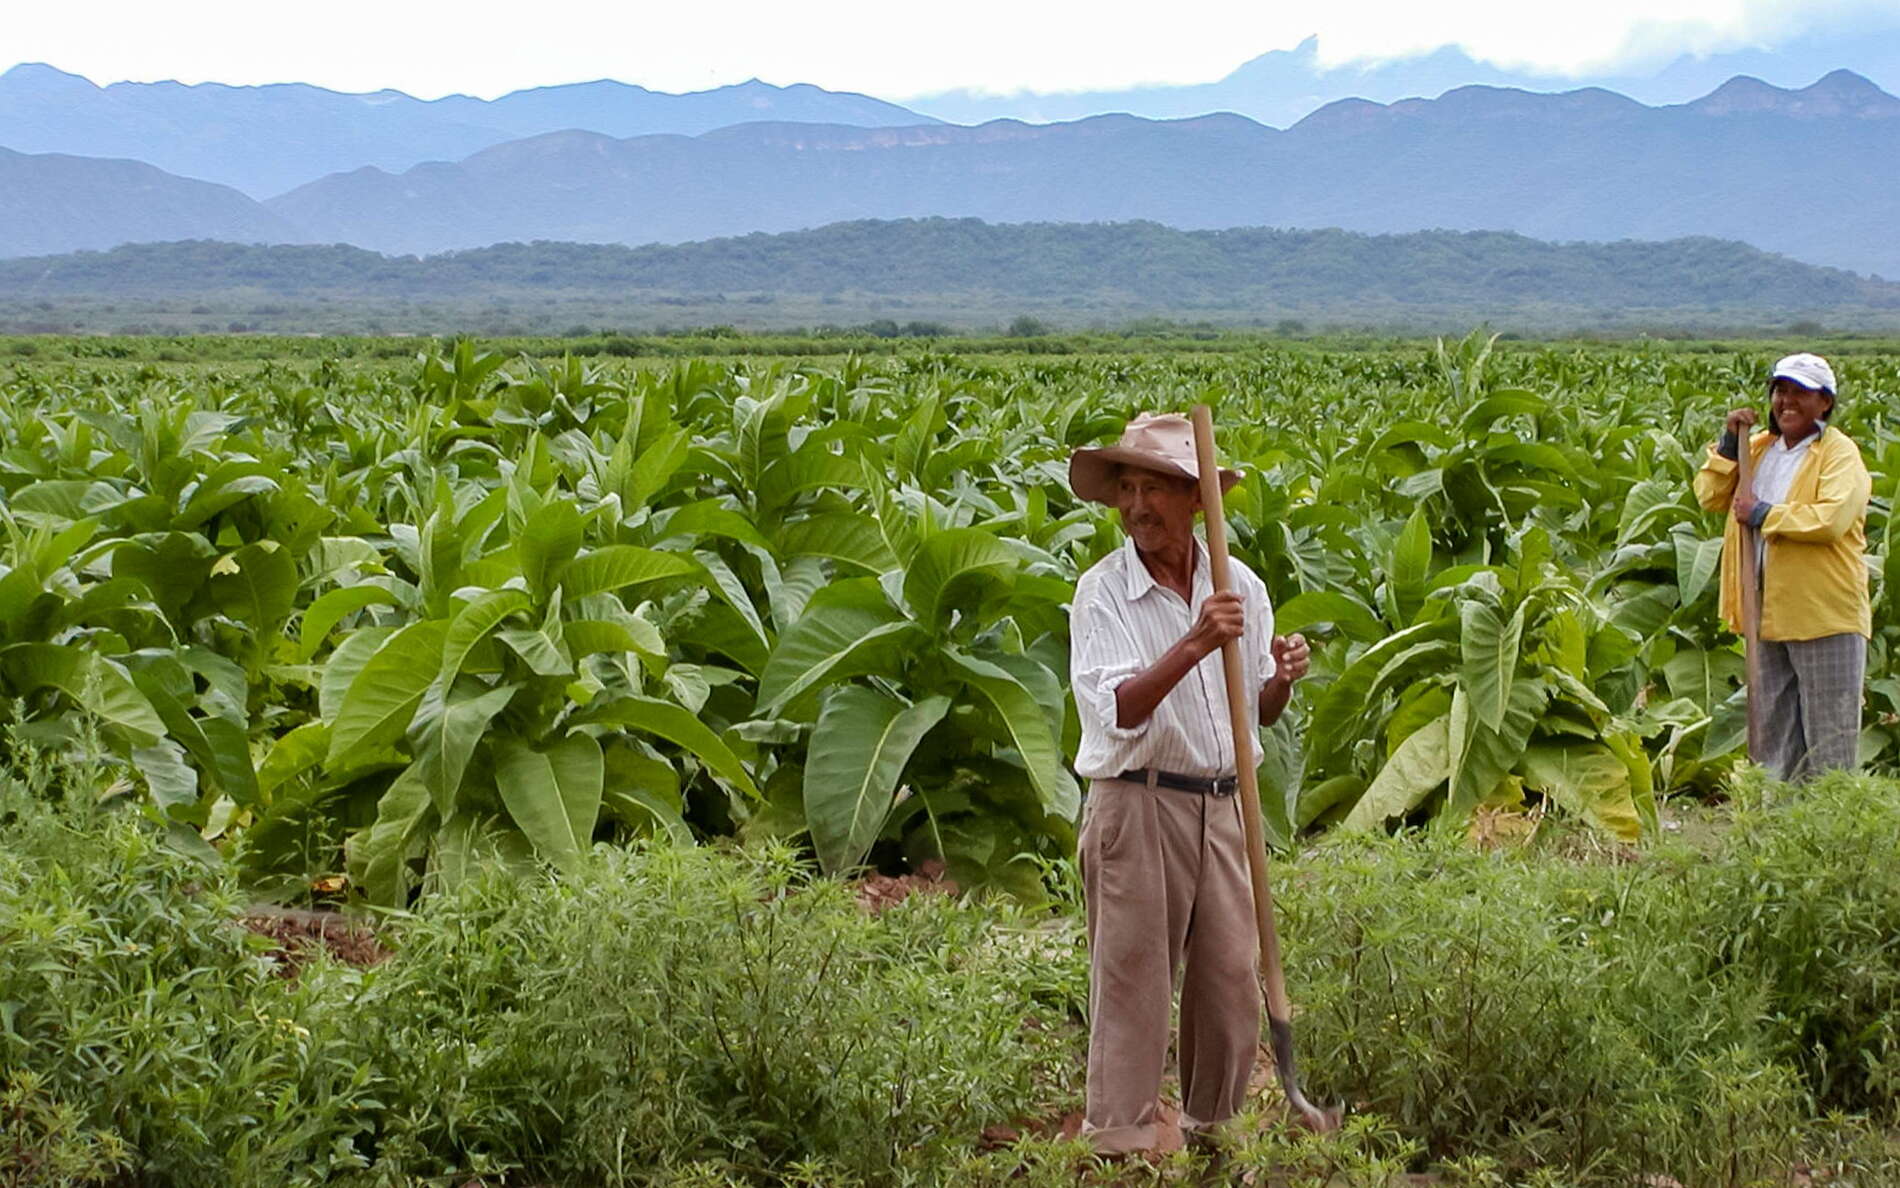 Valle de Lerma | Tobacco cultivation